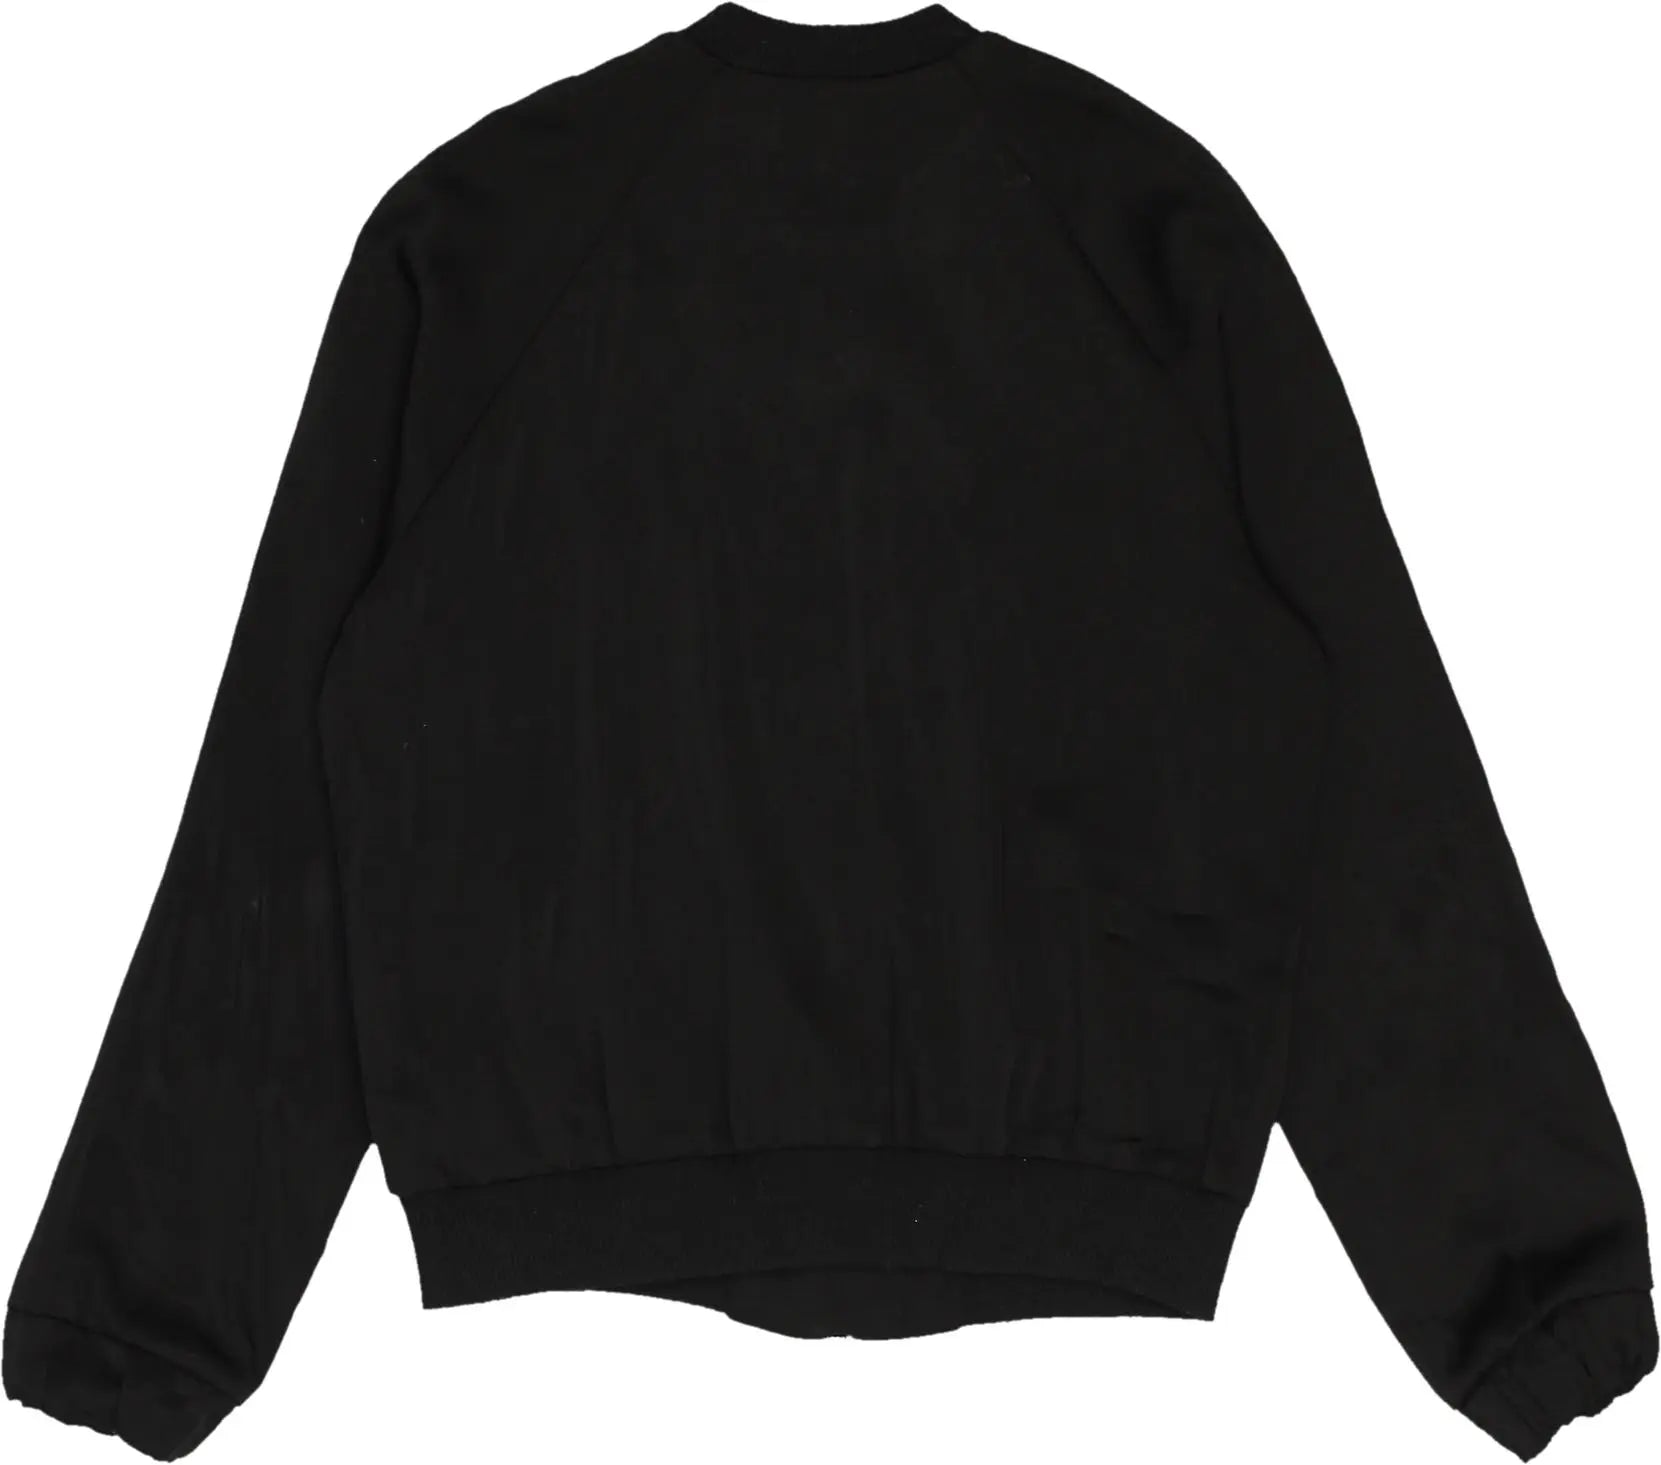 Primark - Black Jacket- ThriftTale.com - Vintage and second handclothing